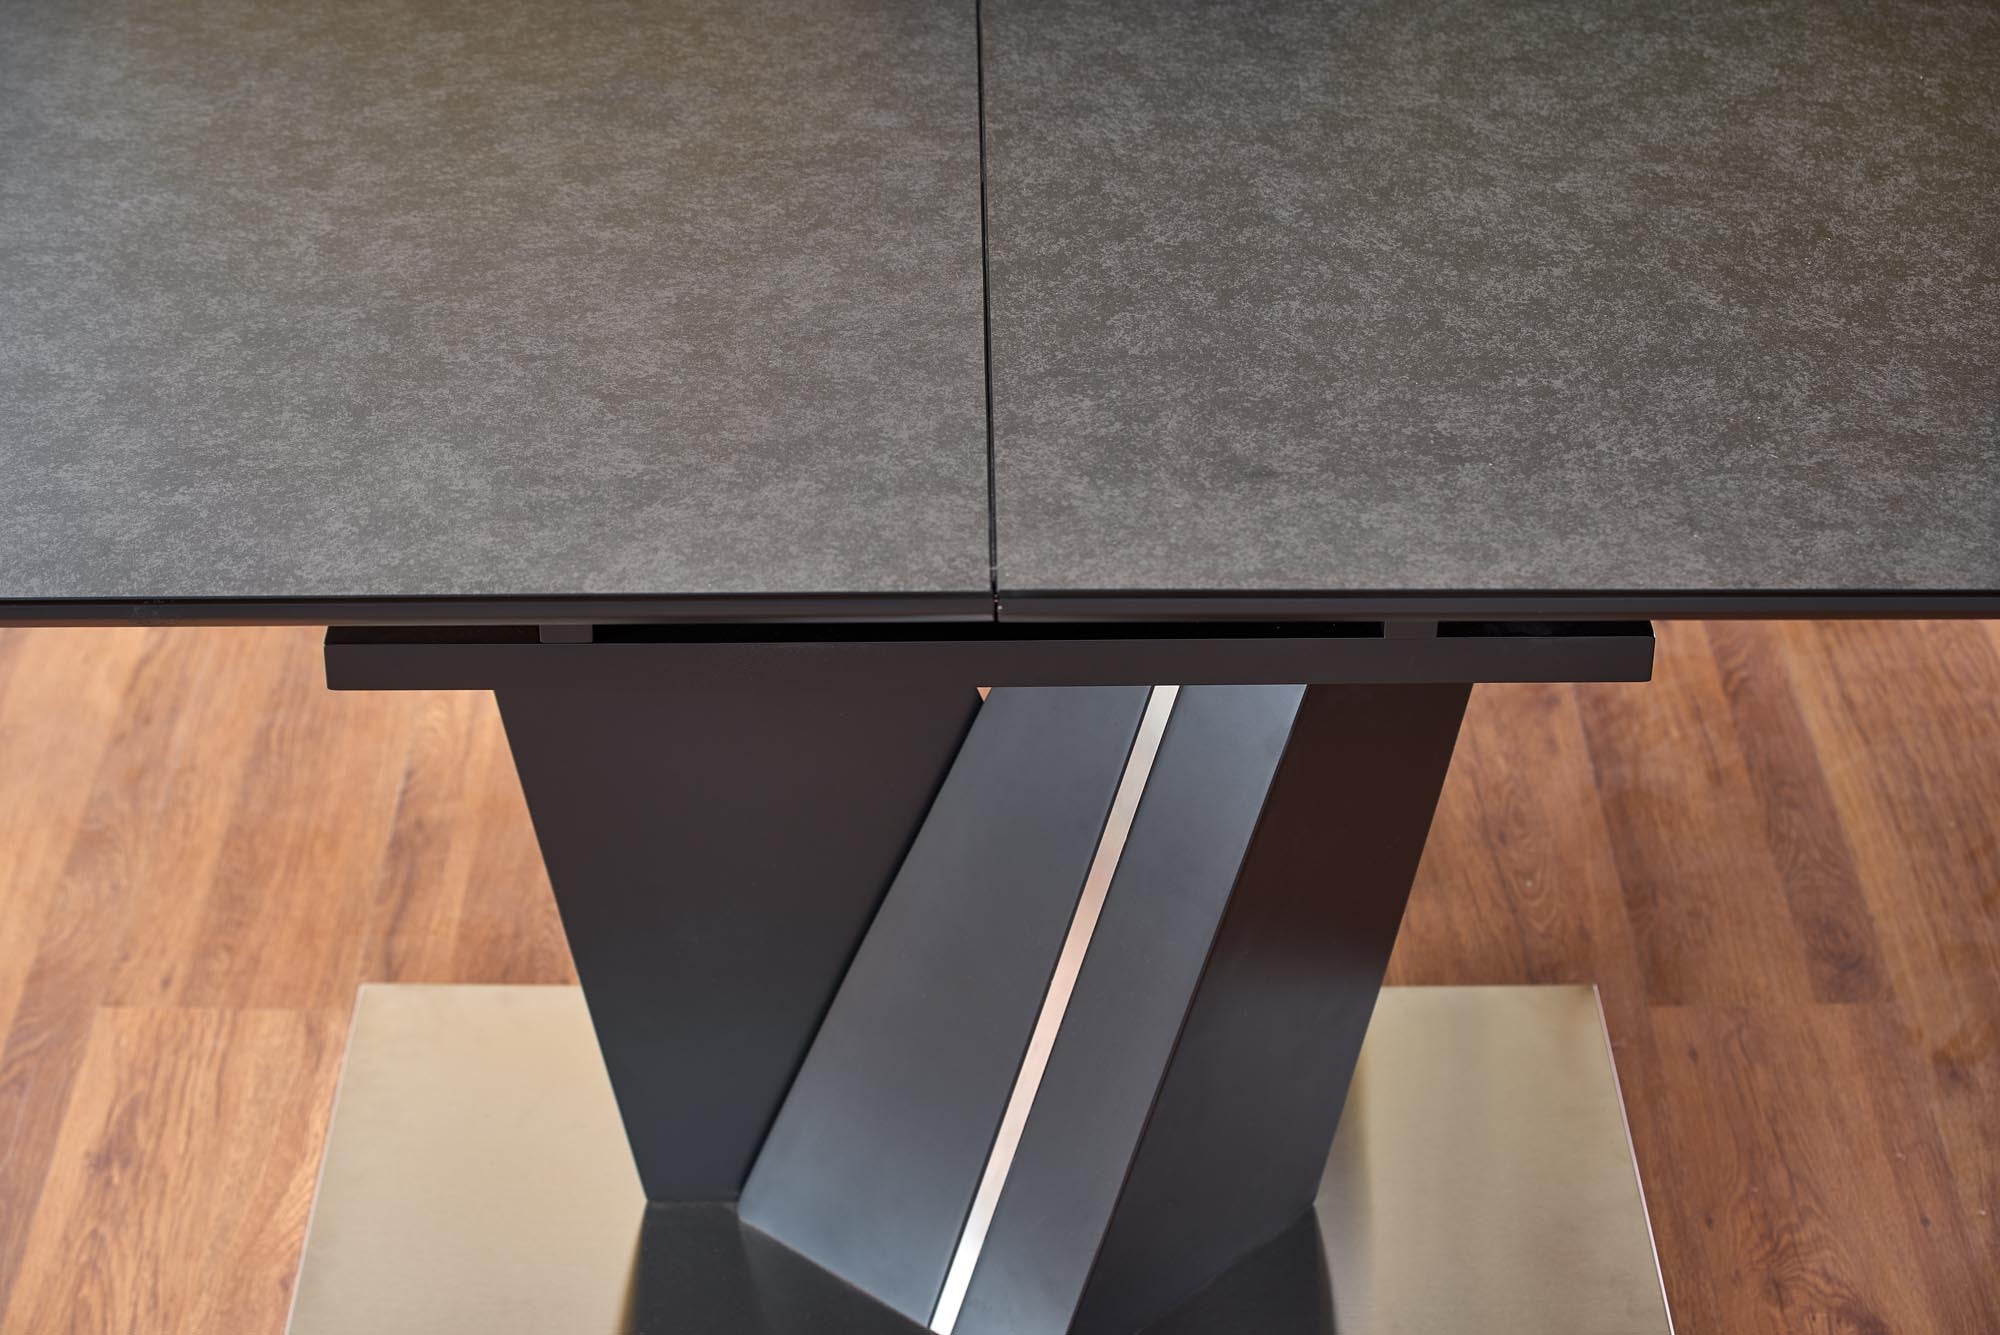 May asztal, 160-200 x 90 cm - Marco Mobili Bútoráruház - Étkezőasztal